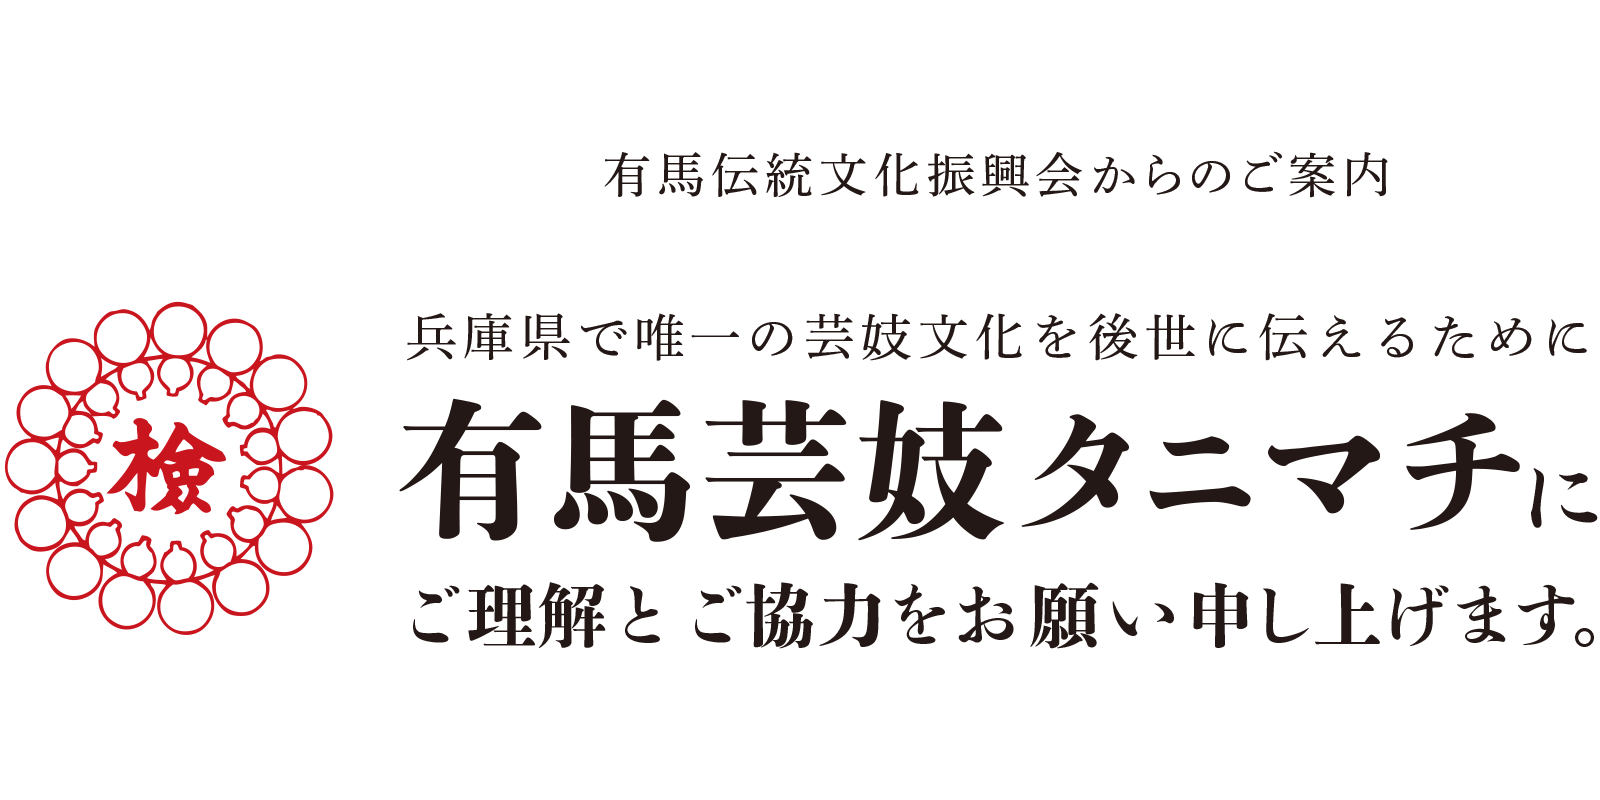 兵庫県で唯一の芸妓文化を支えるために、有馬芸妓タニマチにご理解とご協力をお願い申し上げます。